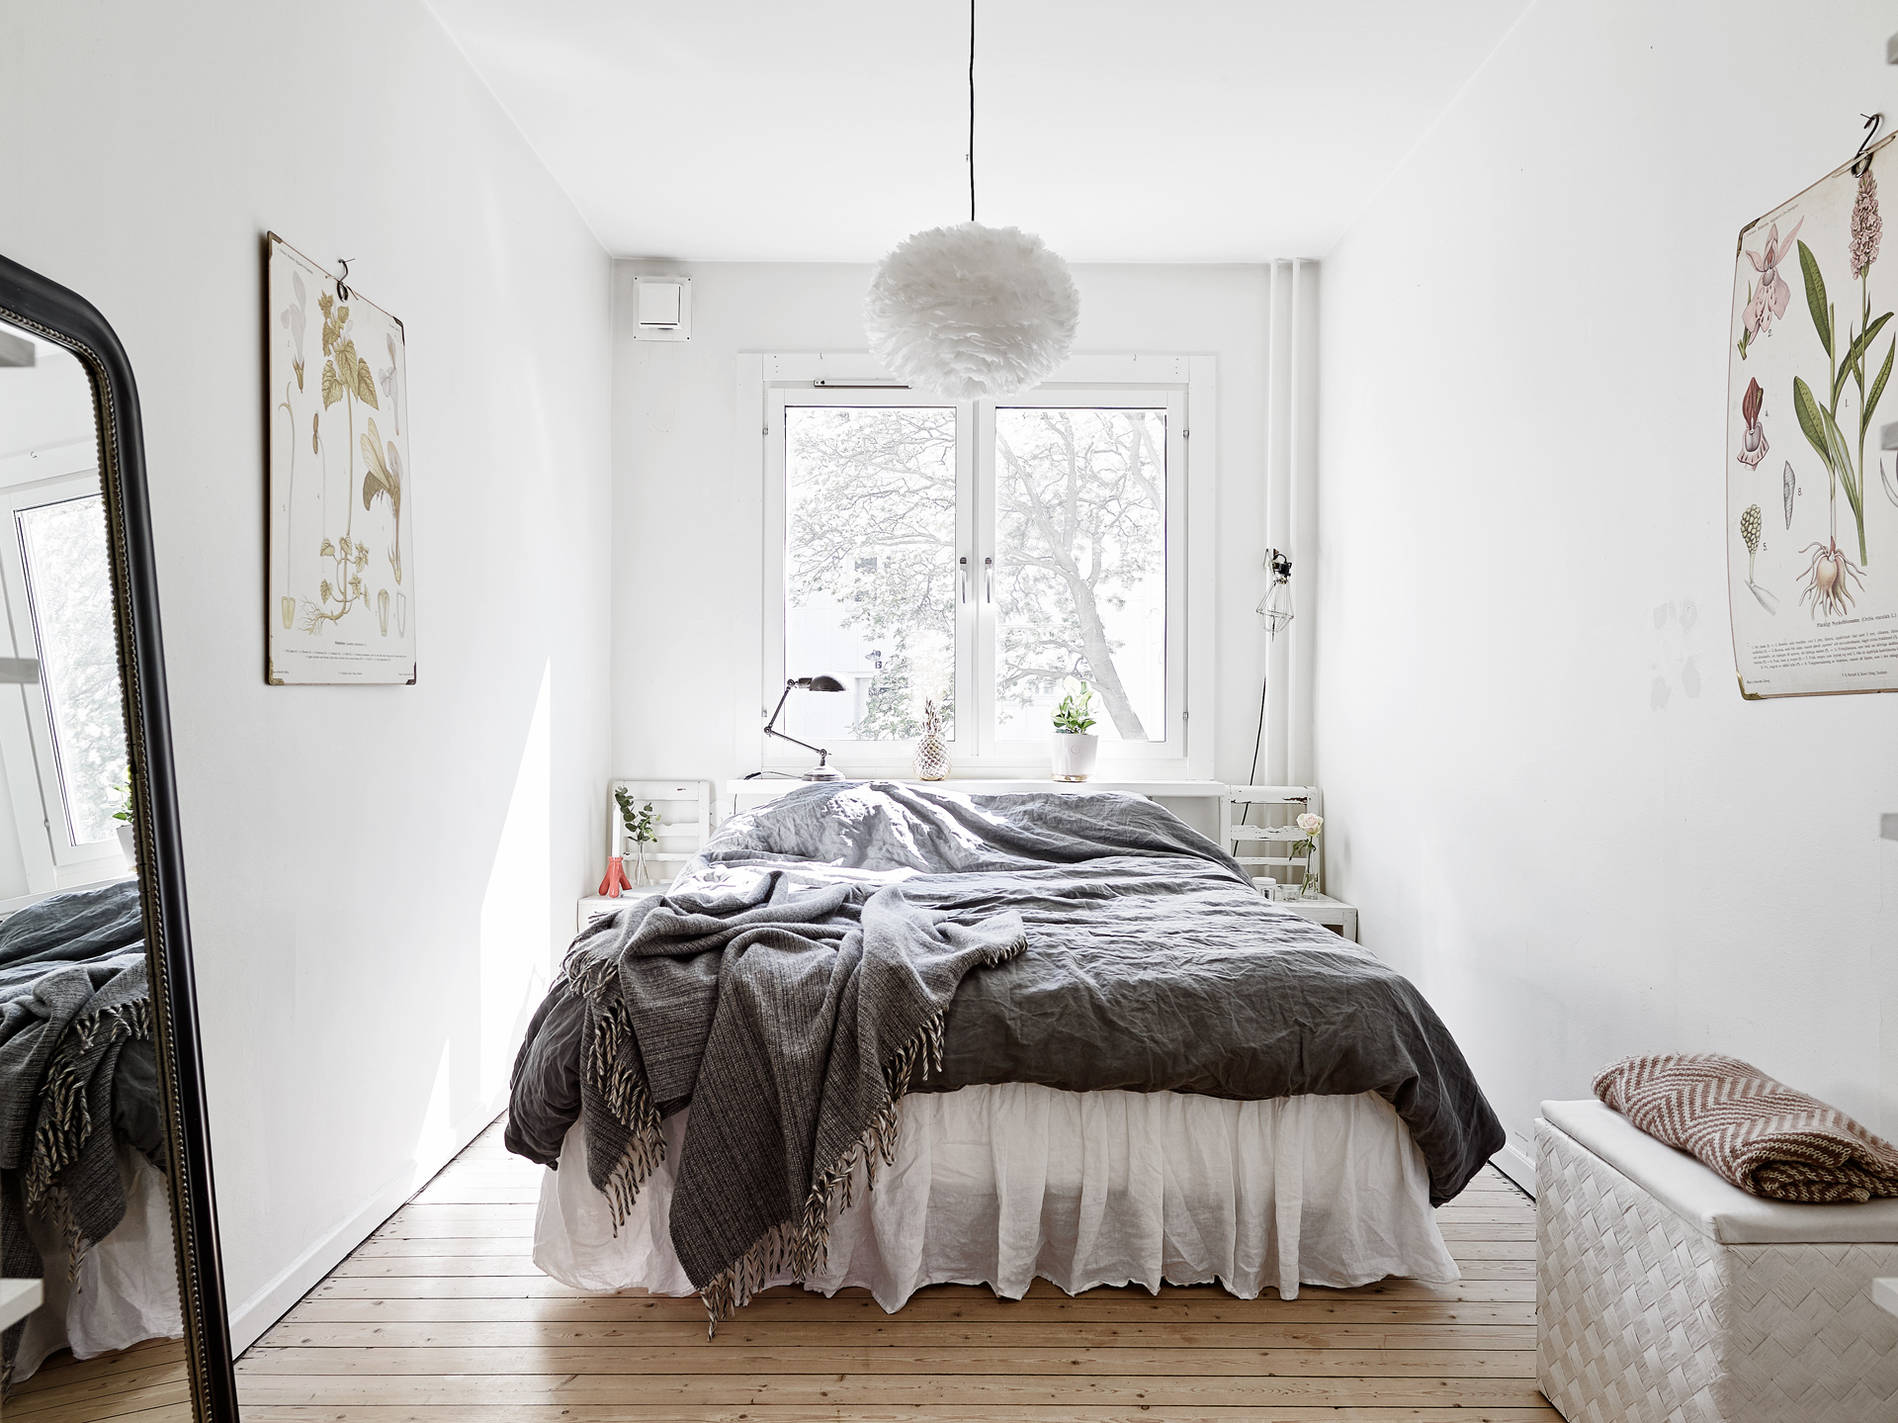 Кровать изголовьем к окну в спальне в скандинавском стиле